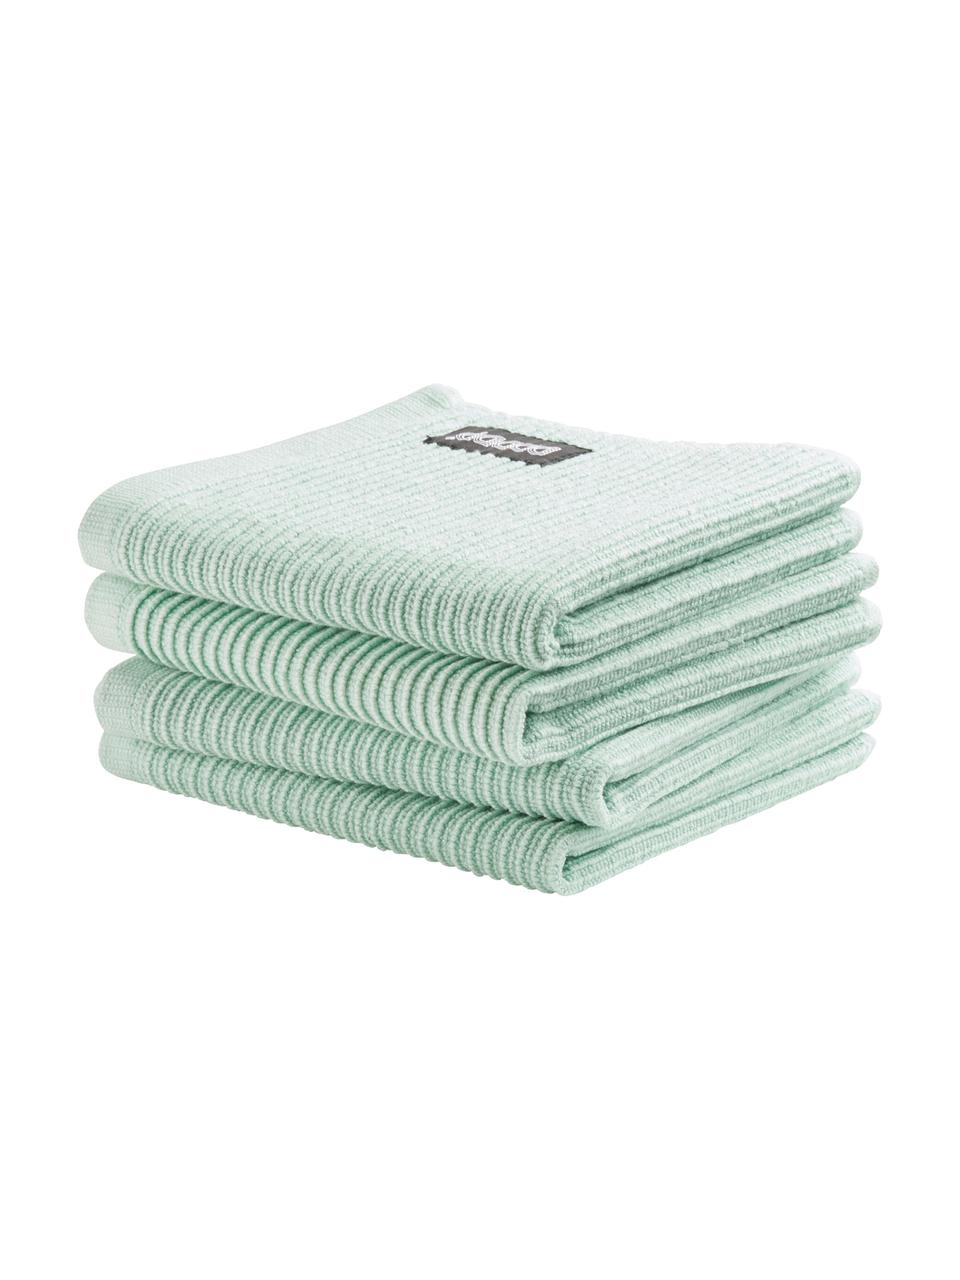 Serviettes en tissu éponge Basic Clean, 4 pièces, Coton, Vert, larg. 30 x long. 30 cm